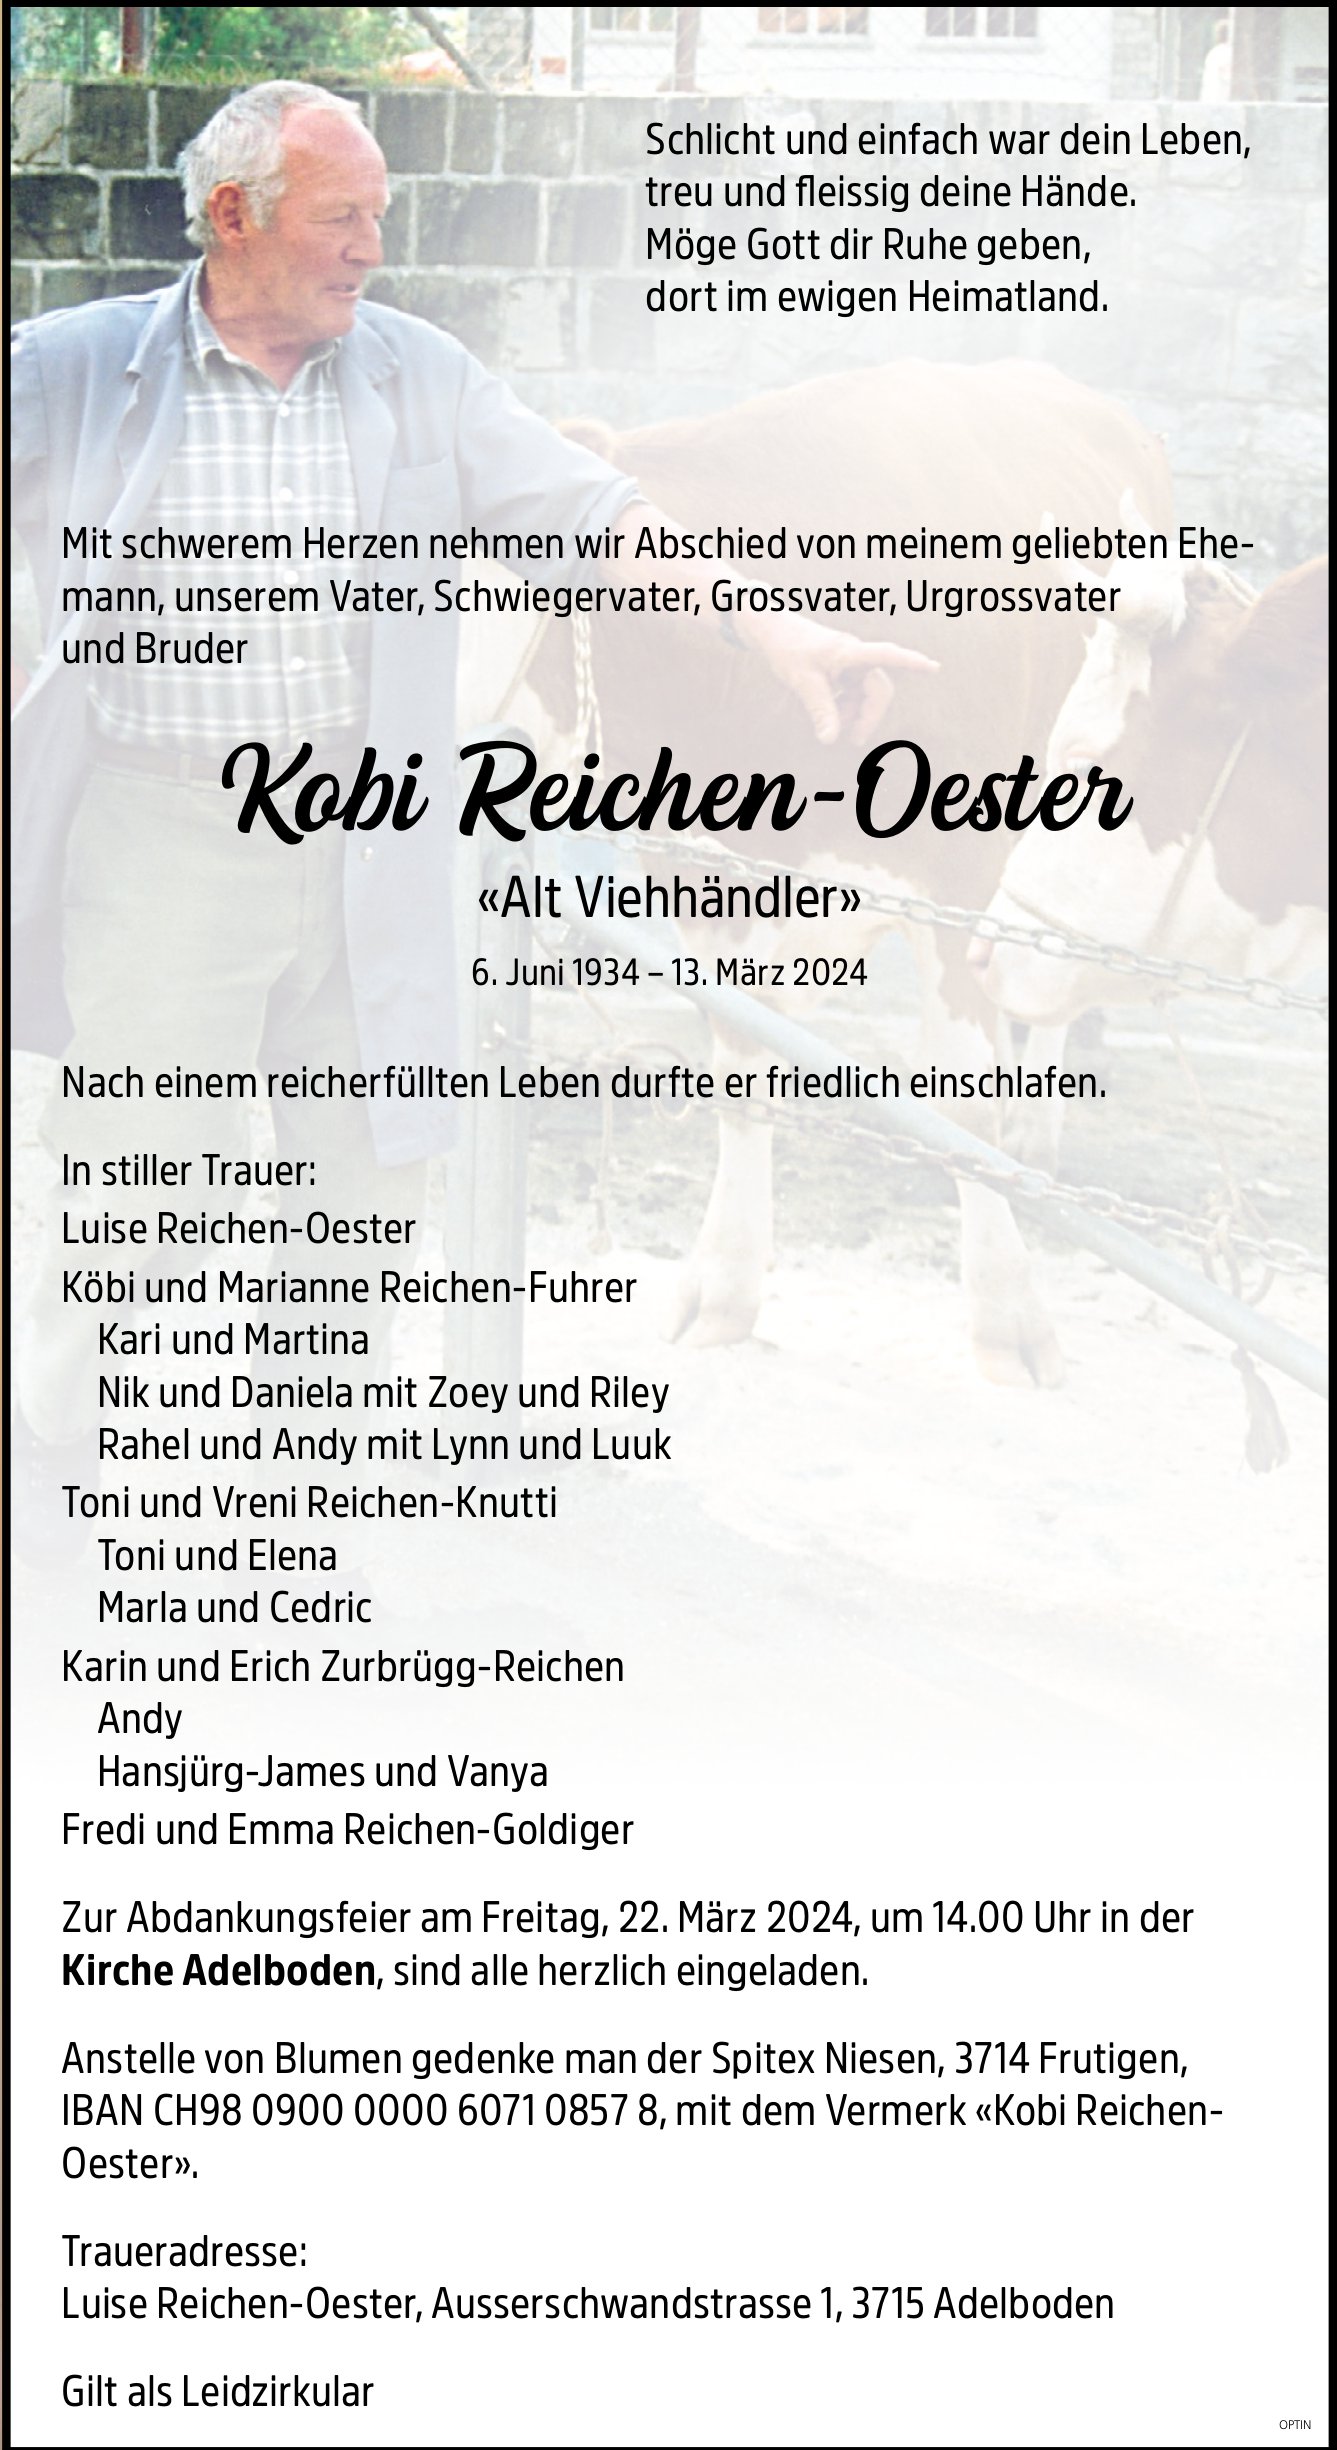 Kobi Reichen-Oester, März 2024 / TA